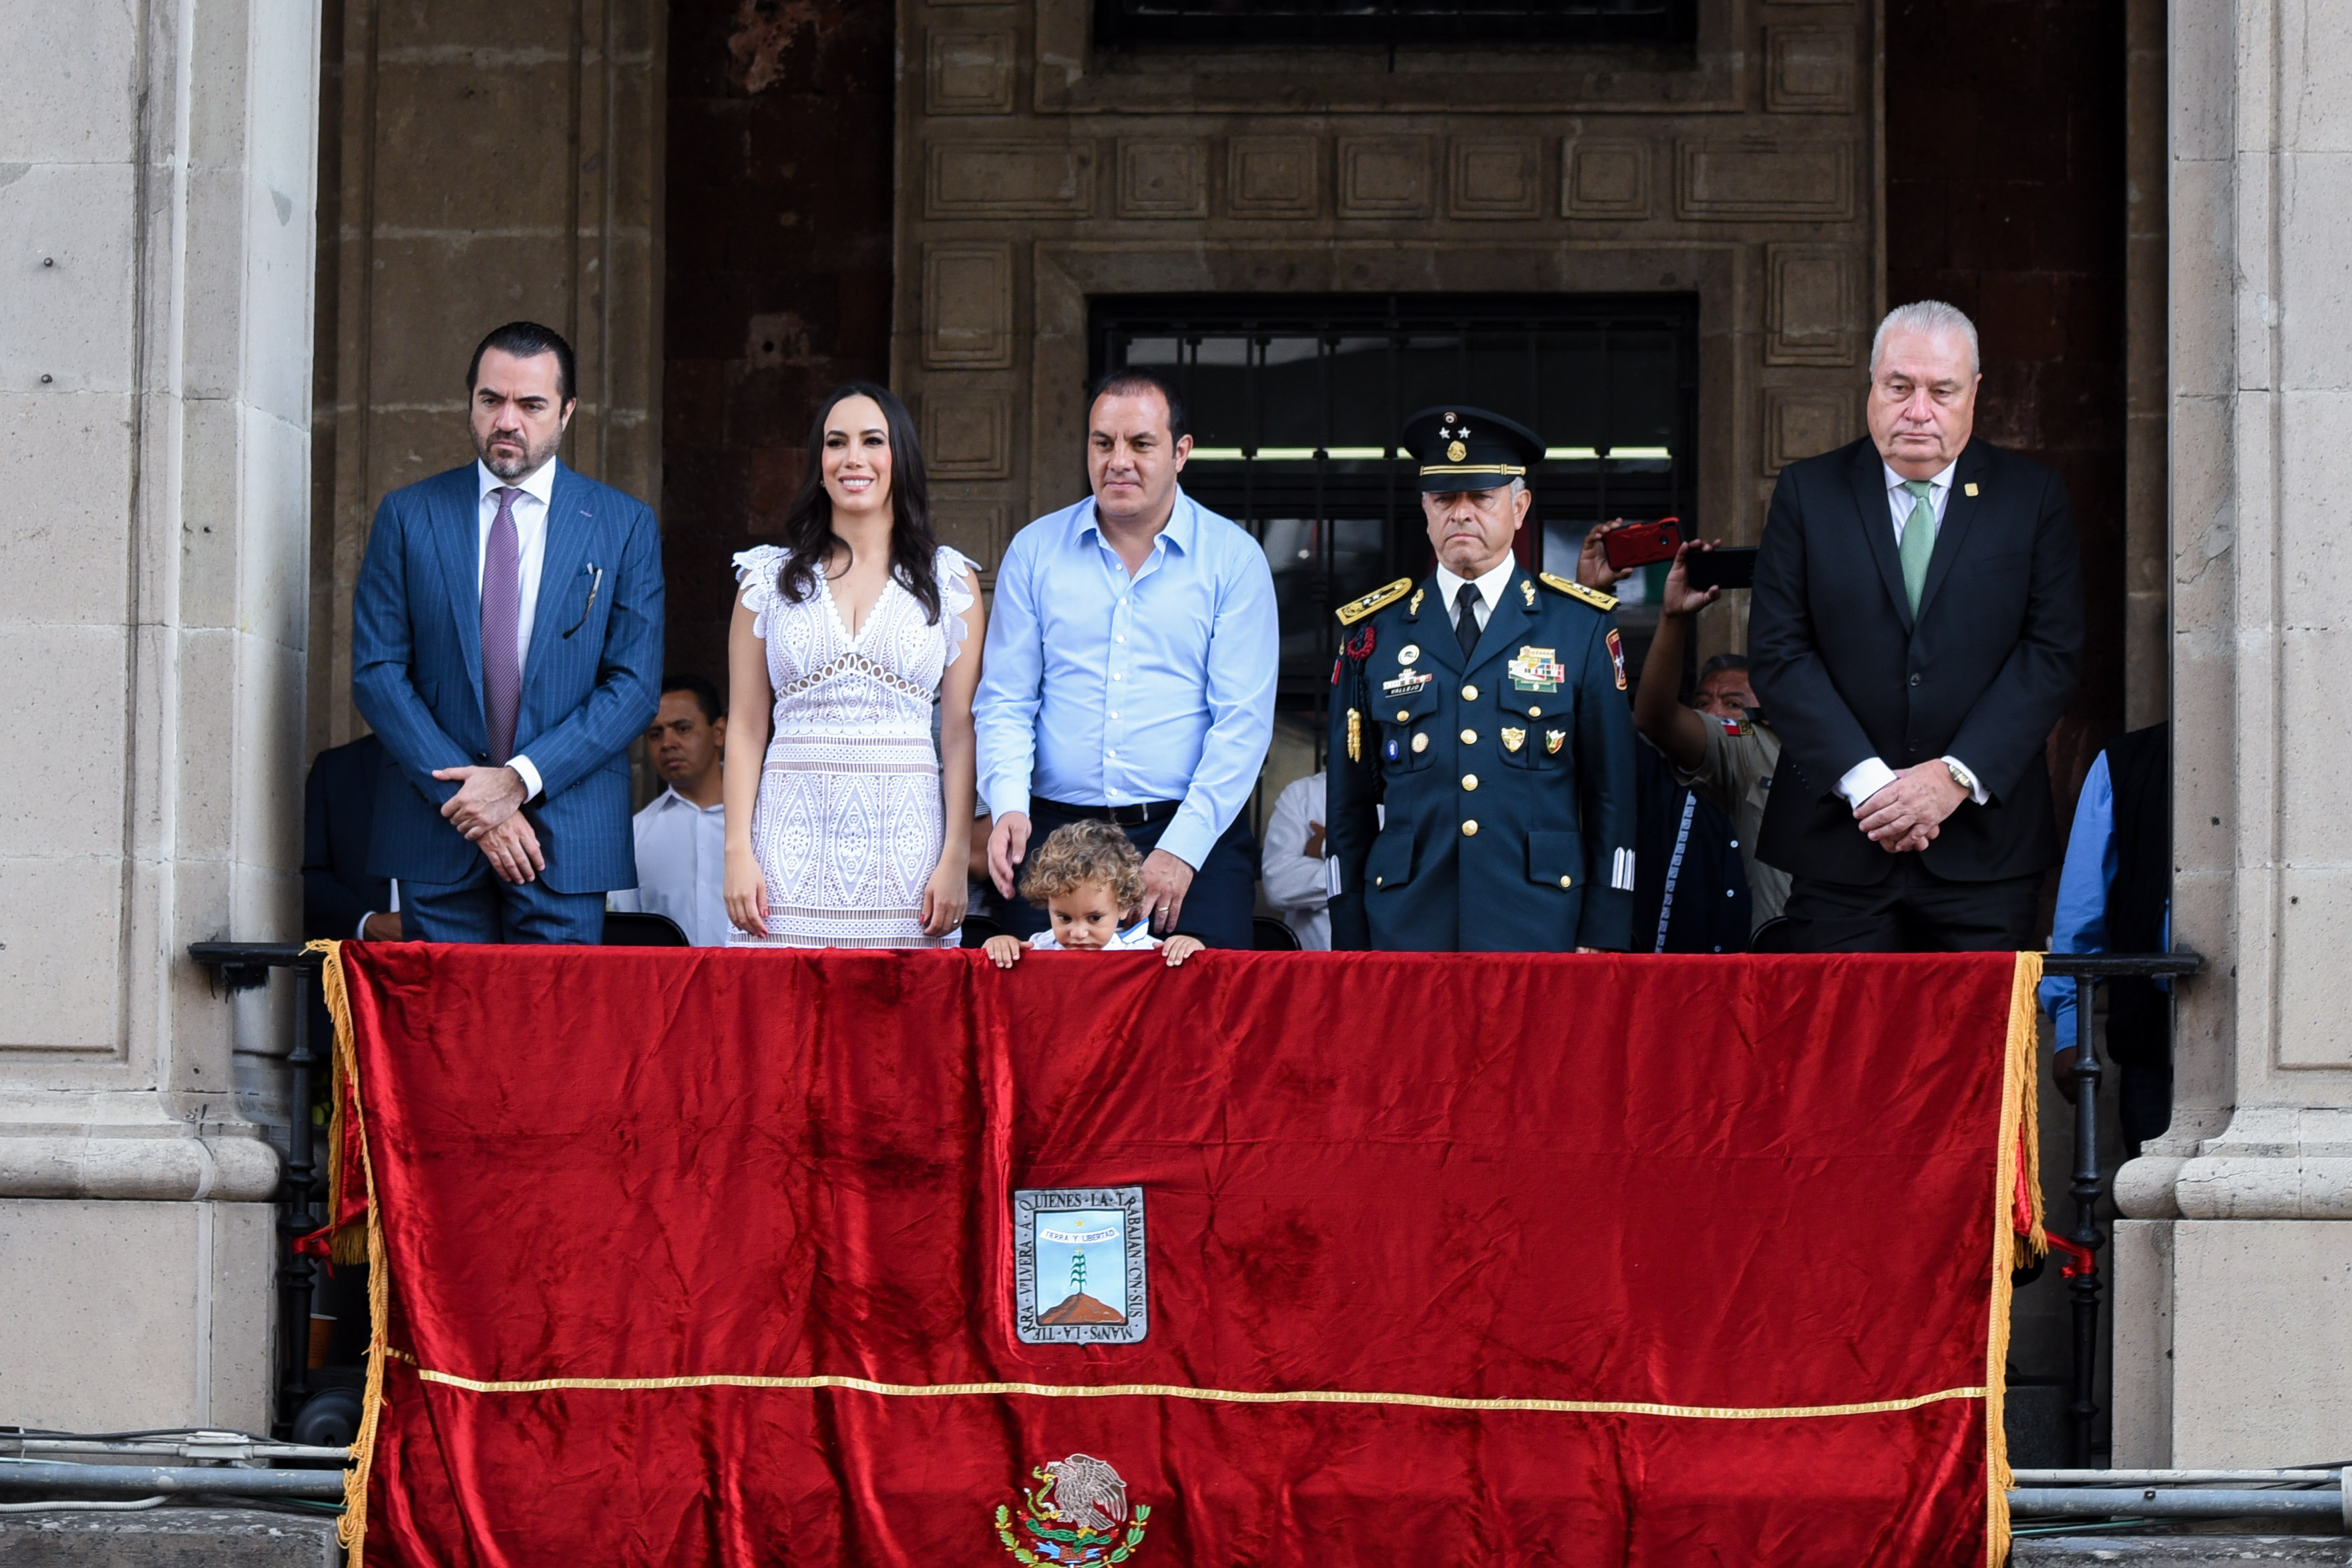 Familias disfrutan Desfile Cívico-Militar en el primer cuadro de Cuernavaca  | MORELOS